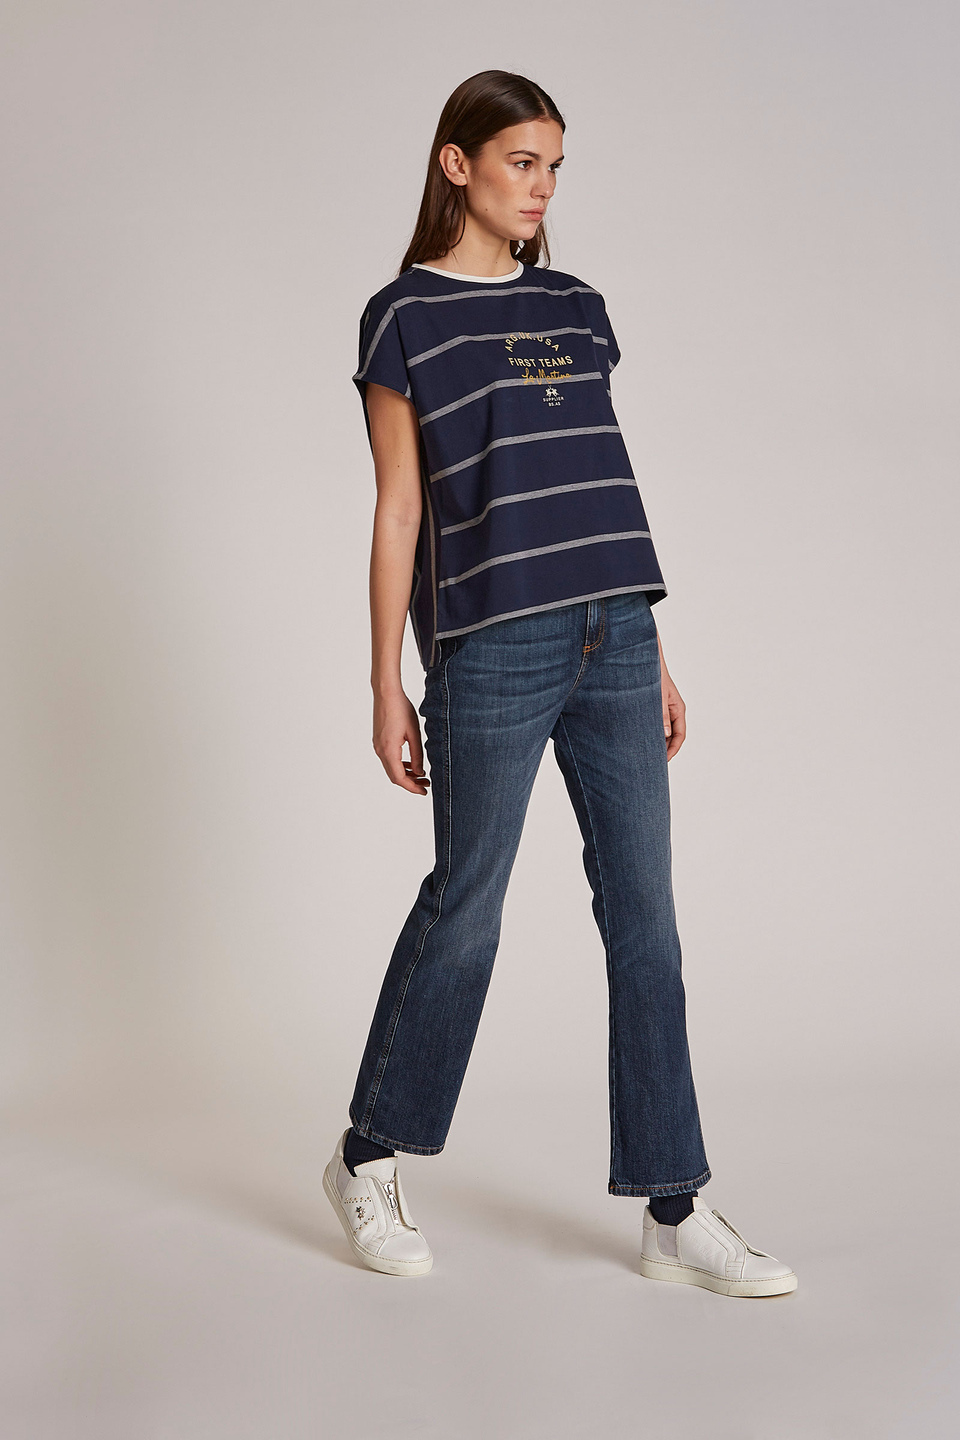 T-shirt femme 100% coton à rayures bicolores et coupe classique | La Martina - Official Online Shop